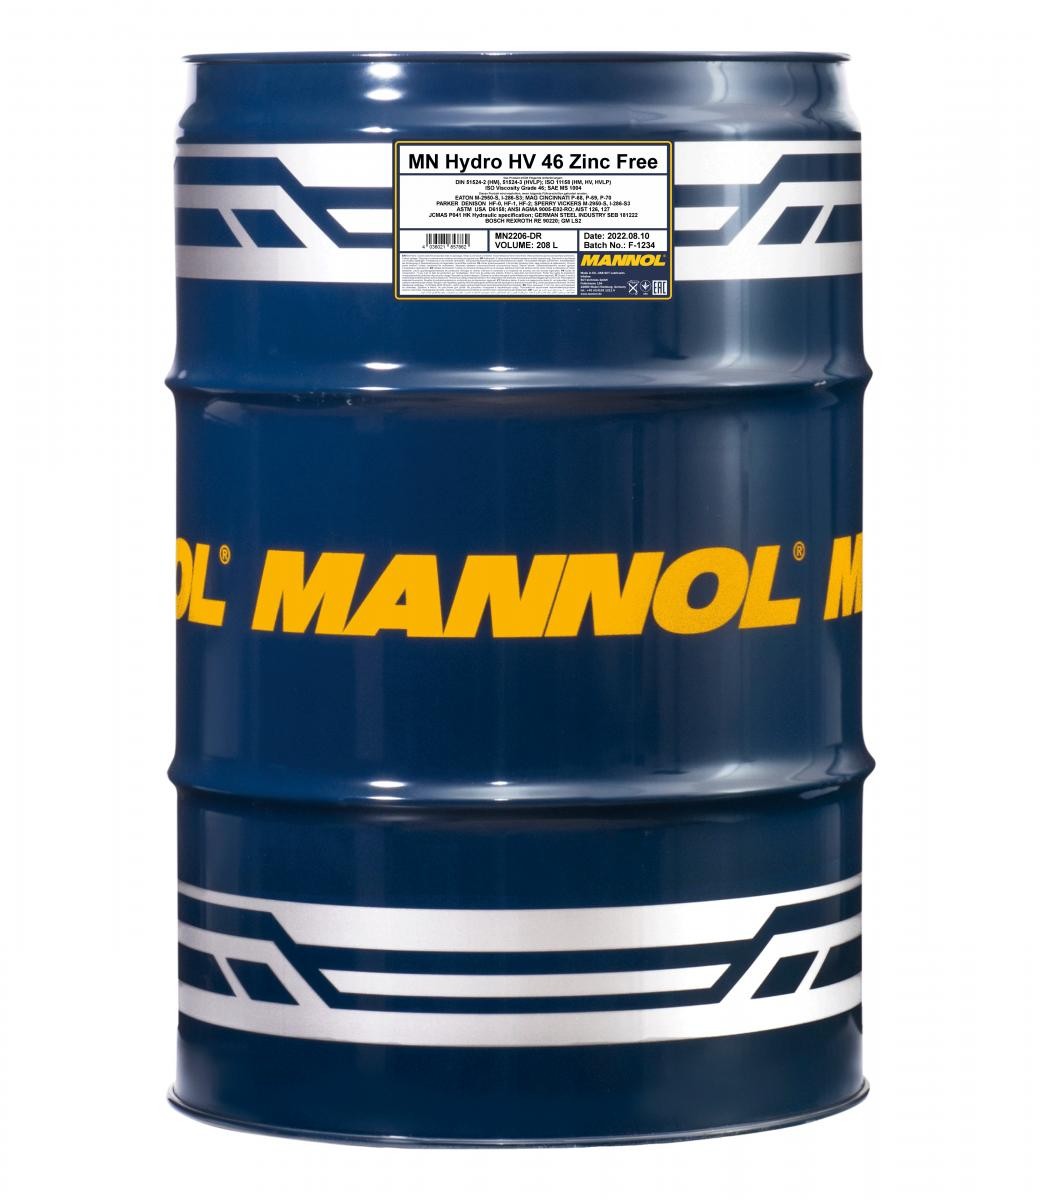 MANNOL Hydro HV ISO 46, Zinc Free Central Hydraulic Oil MN2206-DR buy